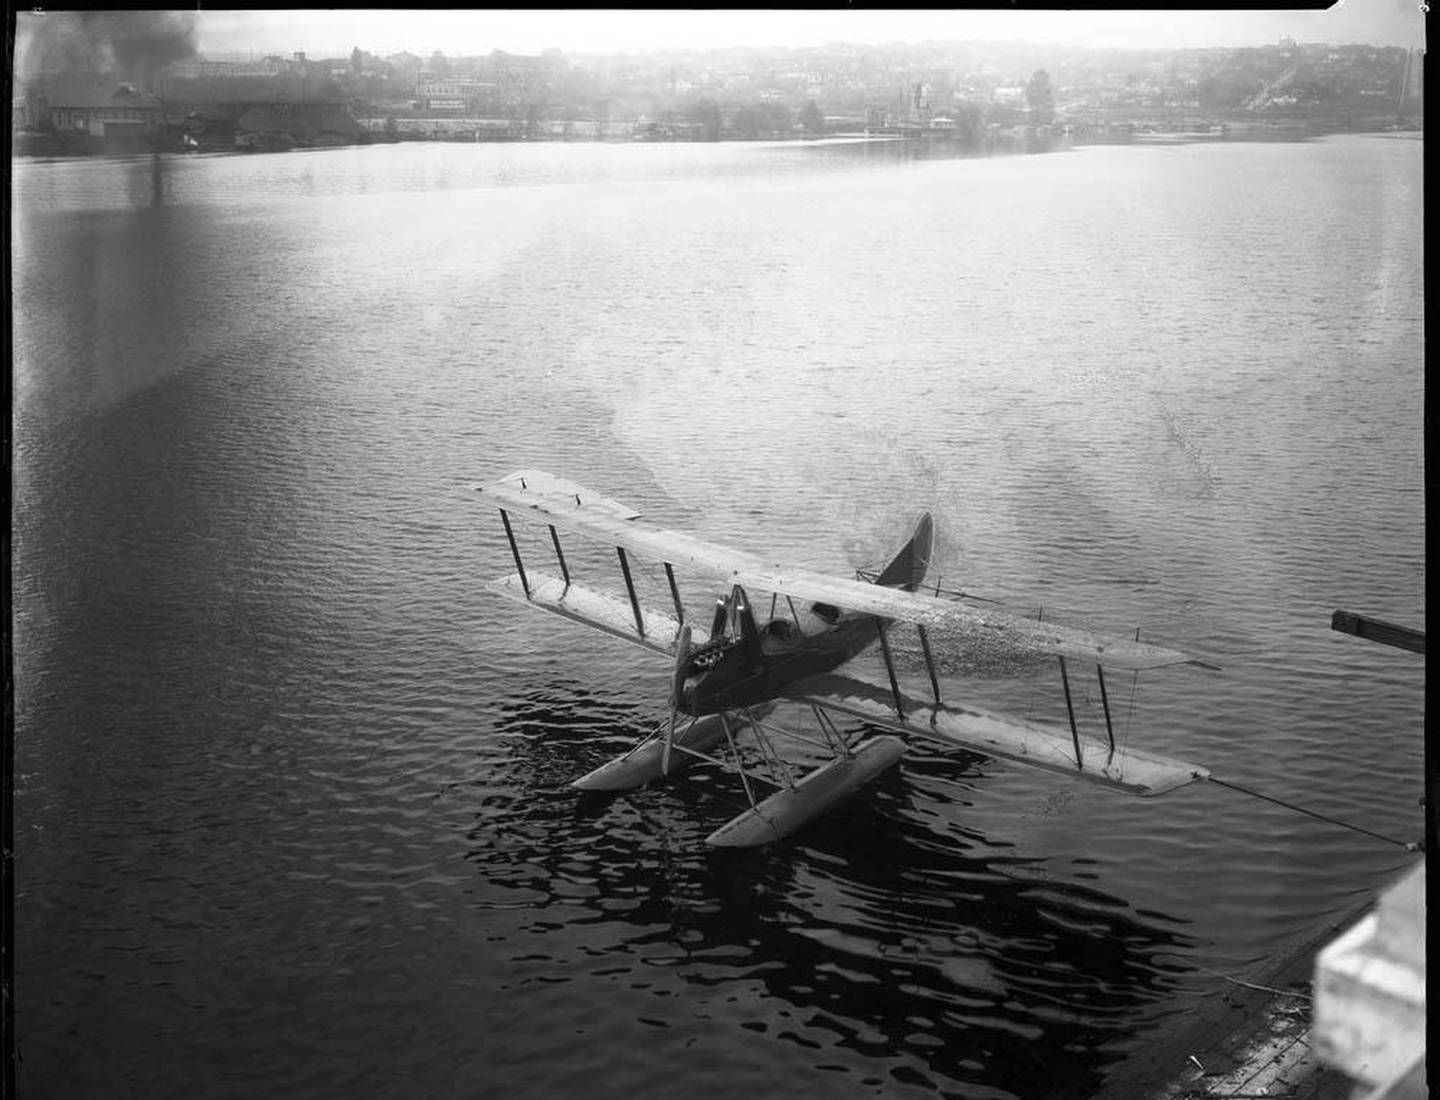 A Model C floatplane docked on Lake Union, Seattle in 1919